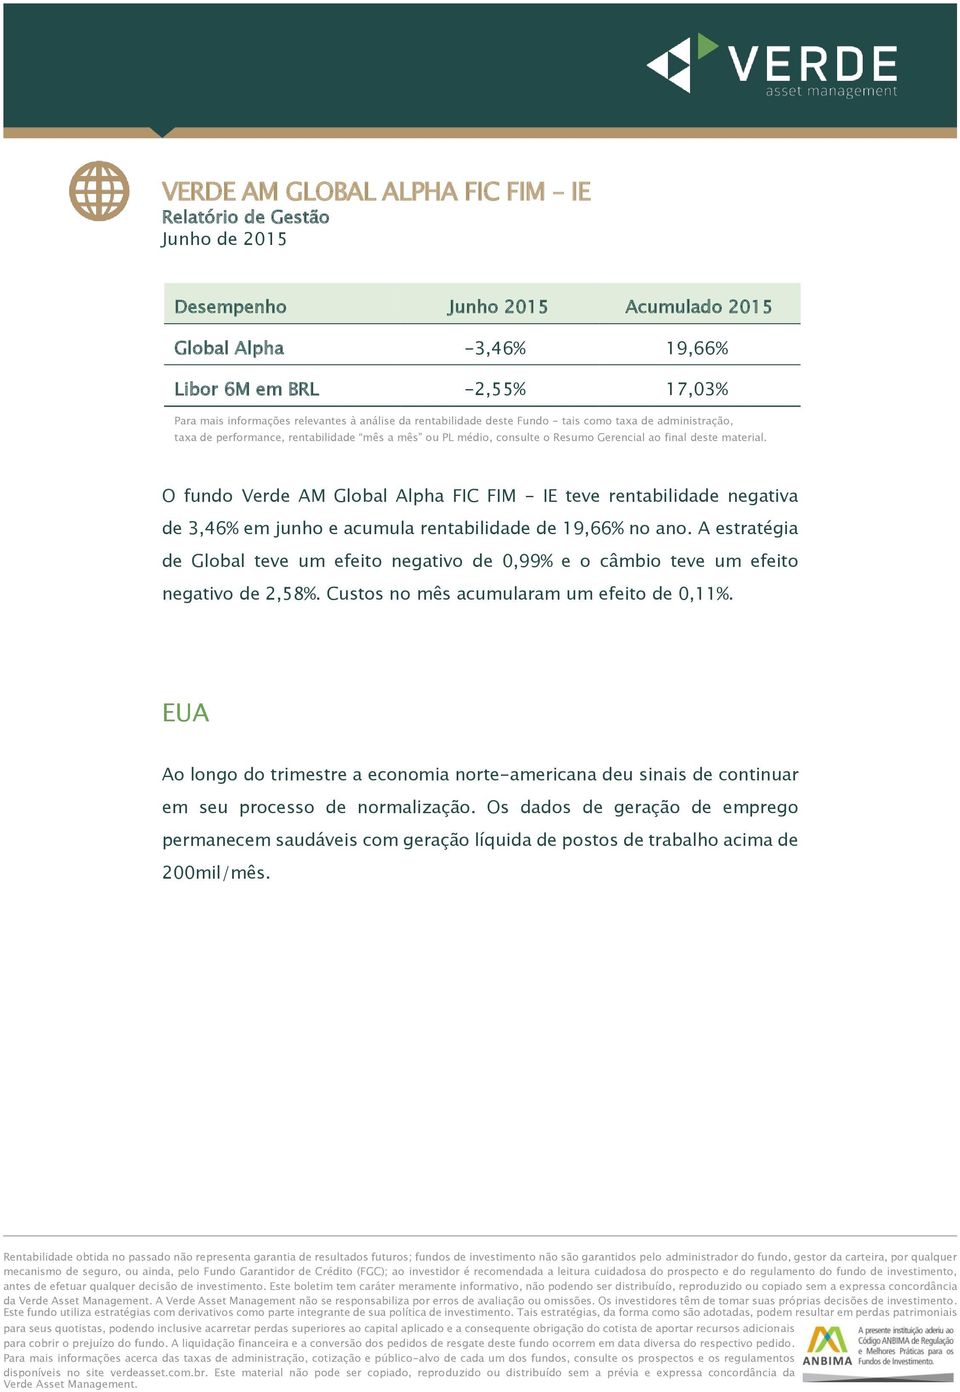 O fundo Verde AM Global Alpha FIC FIM - IE teve rentabilidade negativa de 3,46% em junho e acumula rentabilidade de 19,66% no ano.